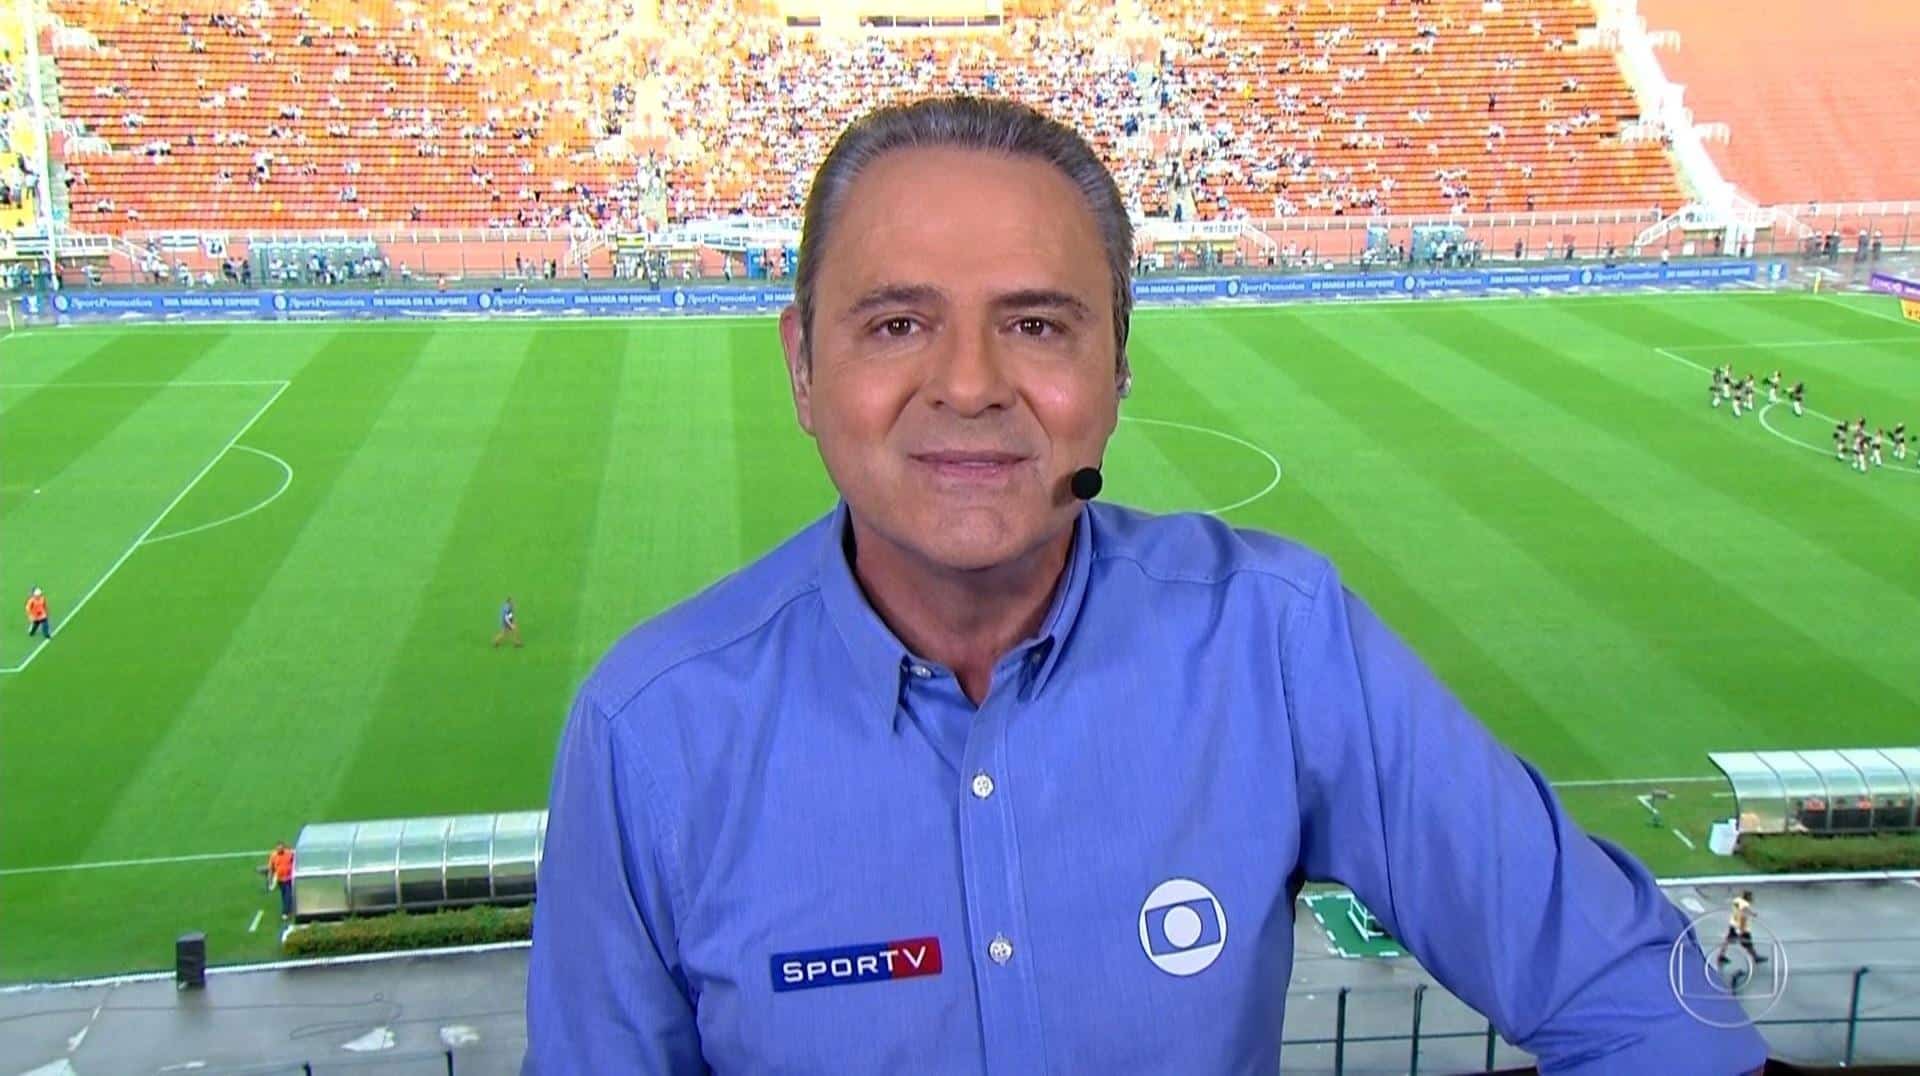 Luis Roberto vira assunto na web durante transmissão de Brasil x França